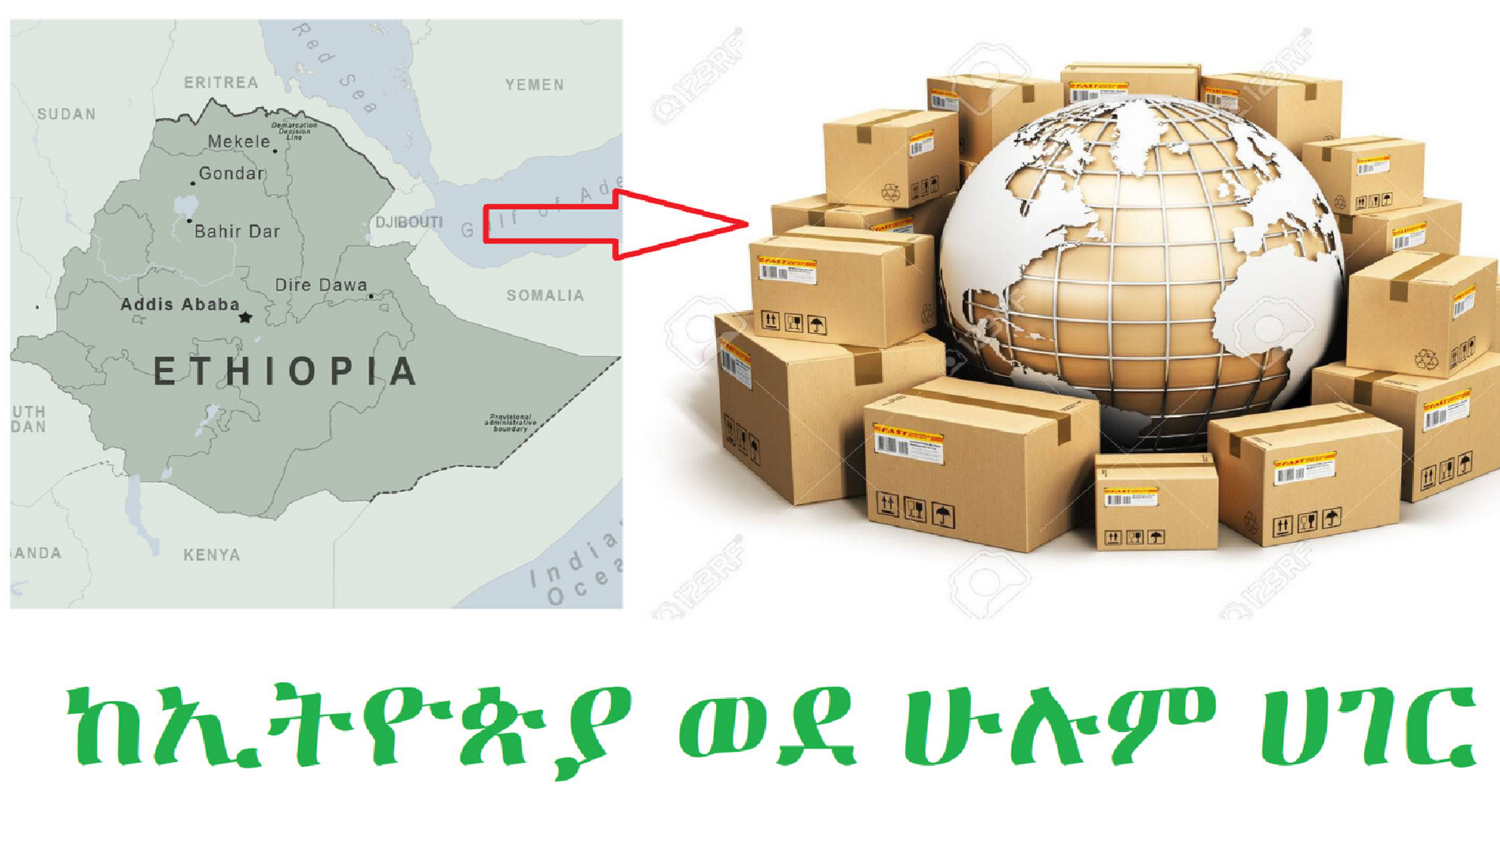 ከኢትዮጵያ ወደ አሜሪካ/ካናዳ/አውሮፓ/ሌሎች ሀገሮች የመላክ አገልግሎት Shipping service from Ethiopia to USA/Canada/Europe or all countries 6 to 10 days - ship